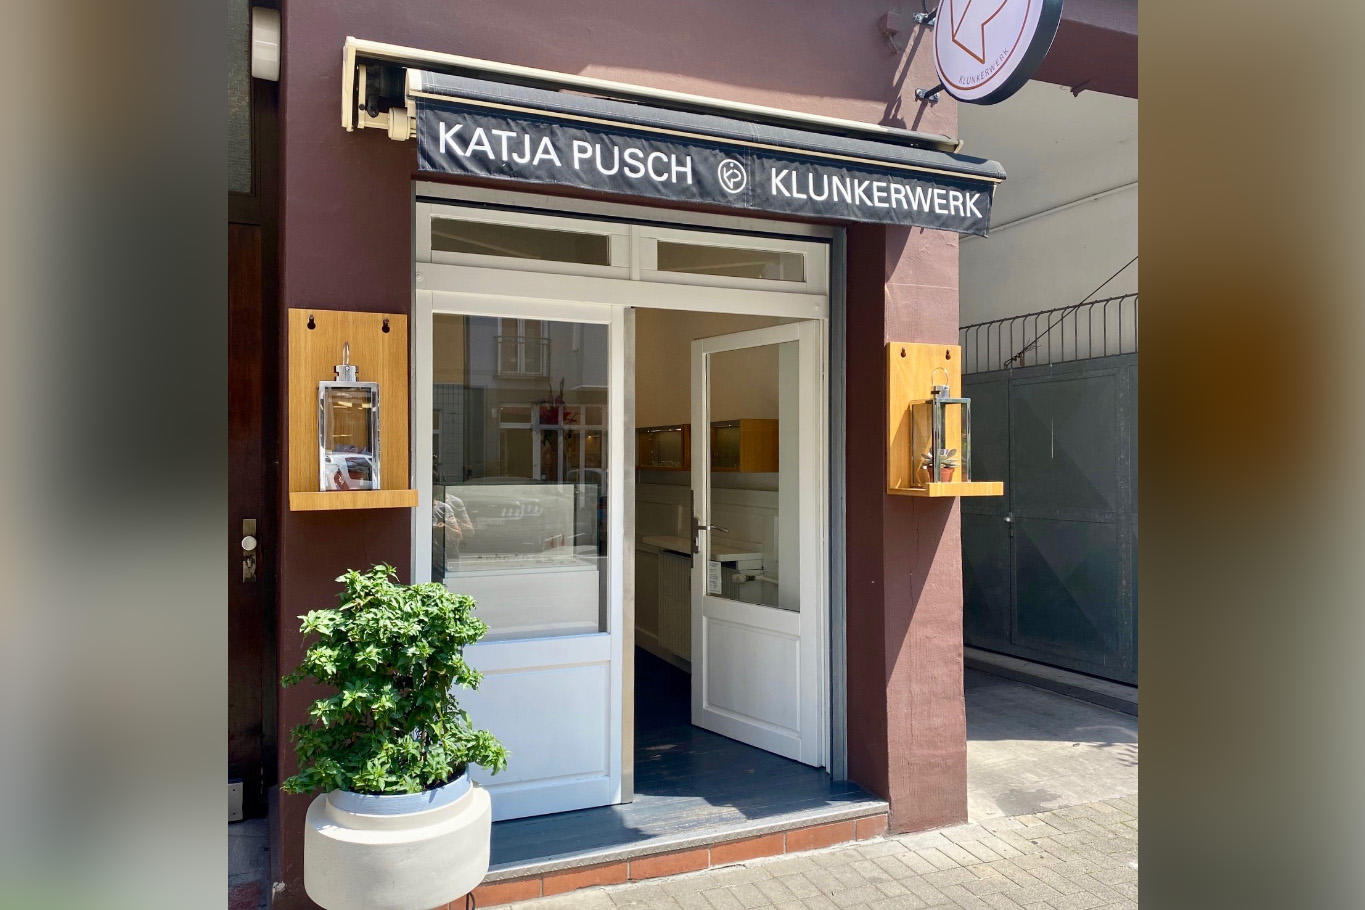 Katja Pusch Klunkerwerk I Goldschmiede Köln, Alteburger Str. 39 in Köln